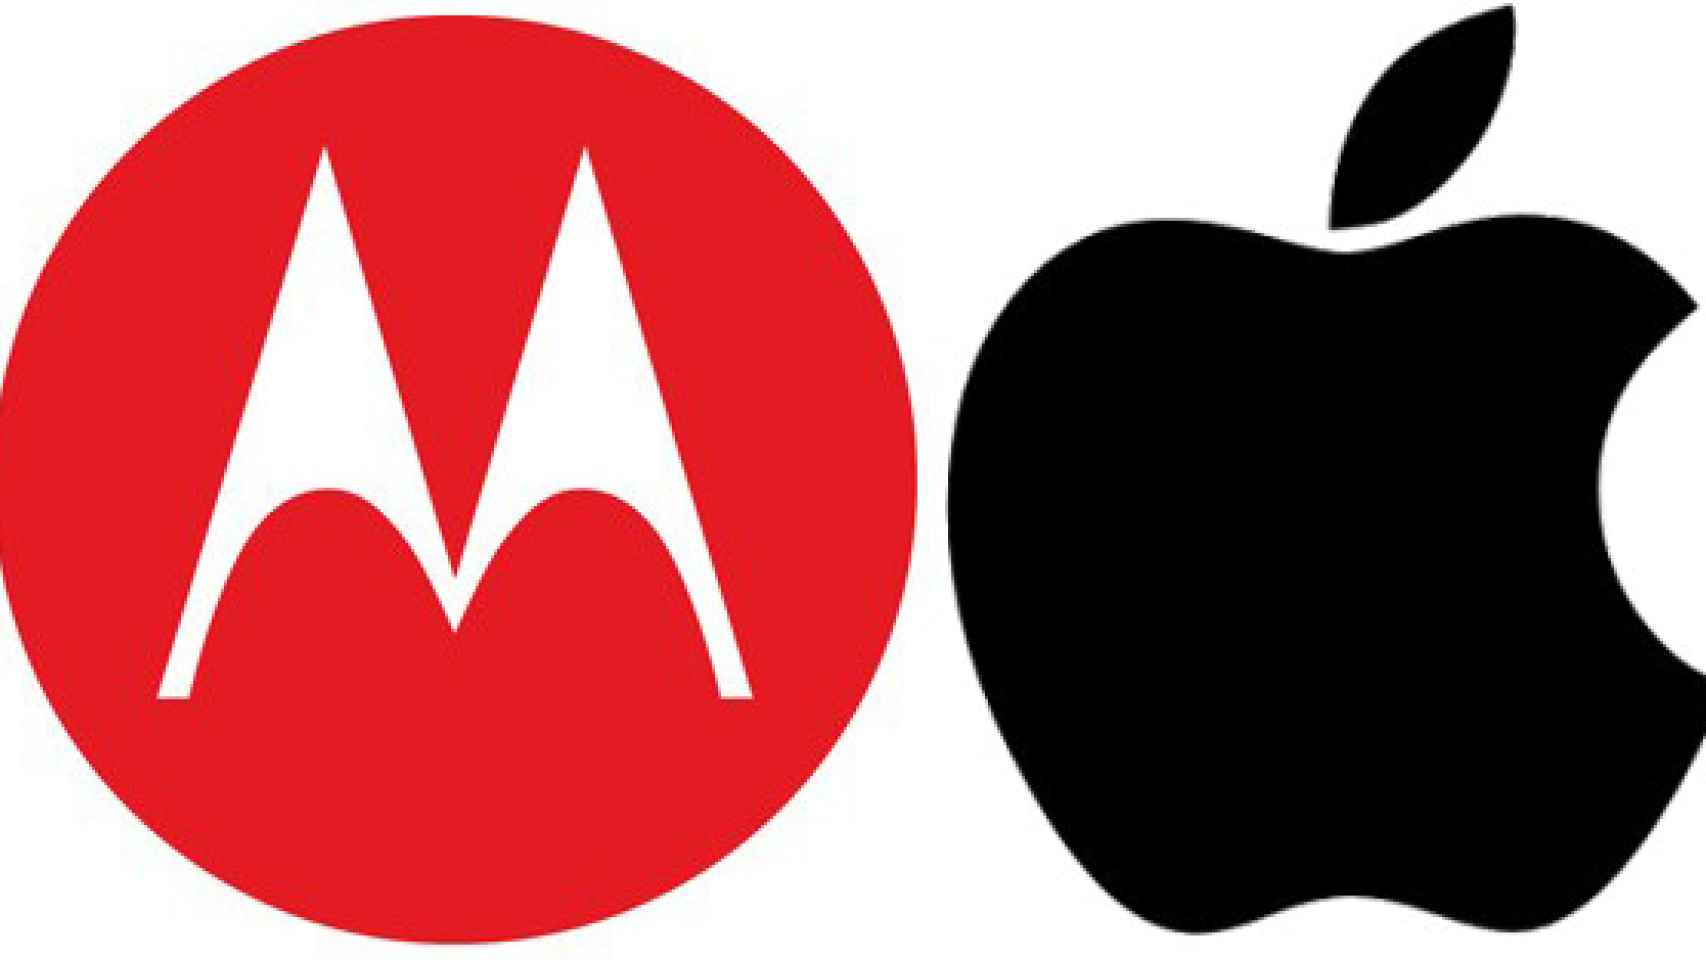 Motorola-vs.-Apple